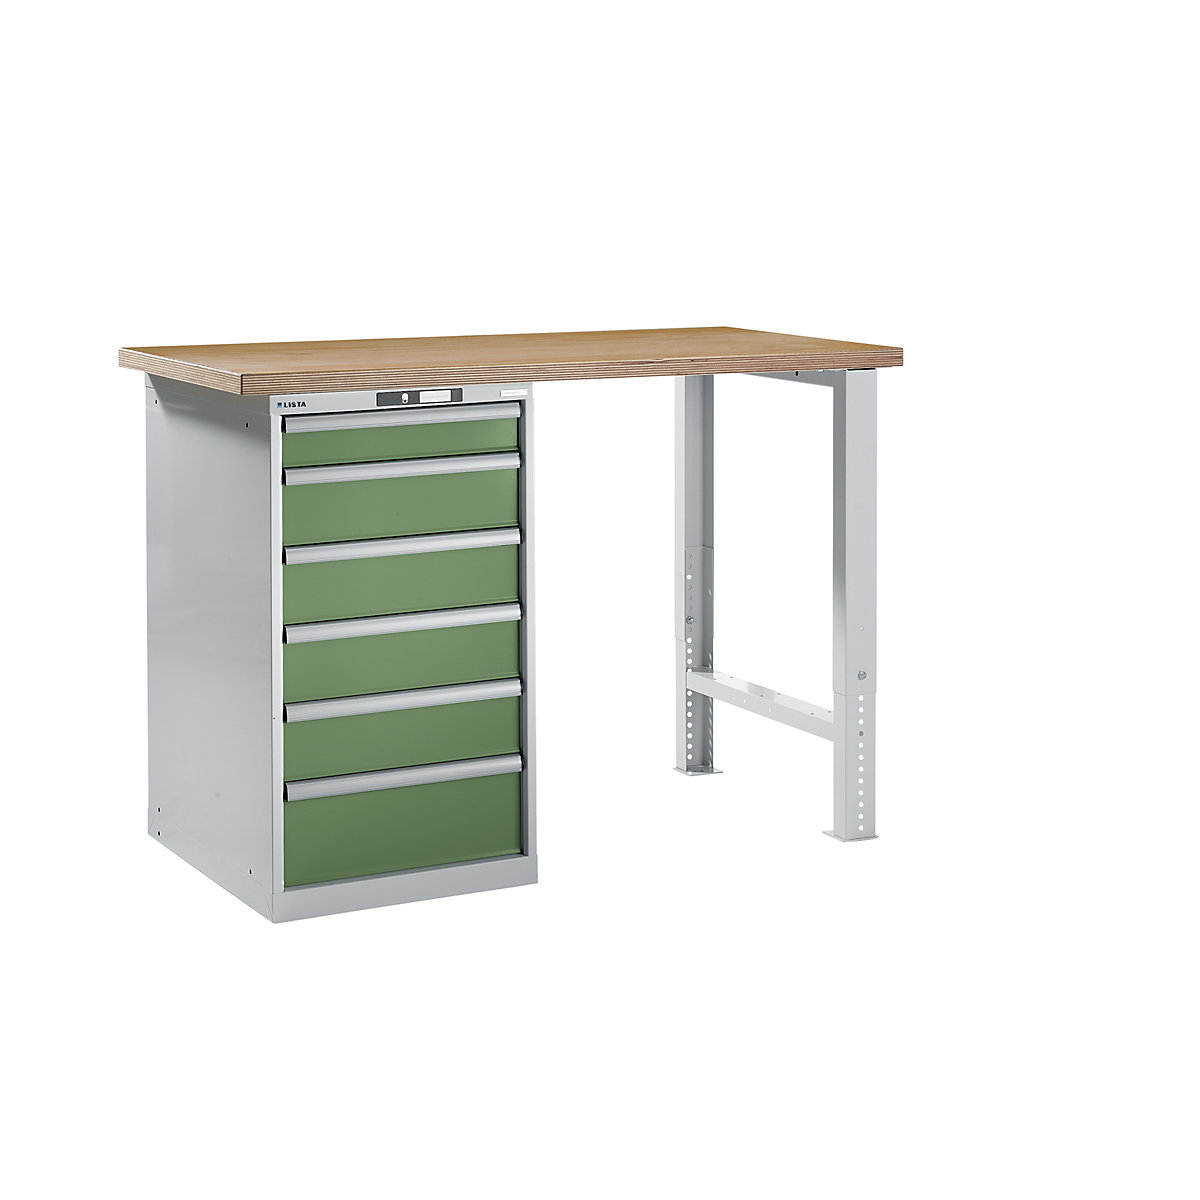 Dílenský stůl ve stavebnicovém systému – LISTA, výška 1040 mm, podstavná skříňka, 6 zásuvky, rezedově zelená, šířka stolu 1500 mm-6